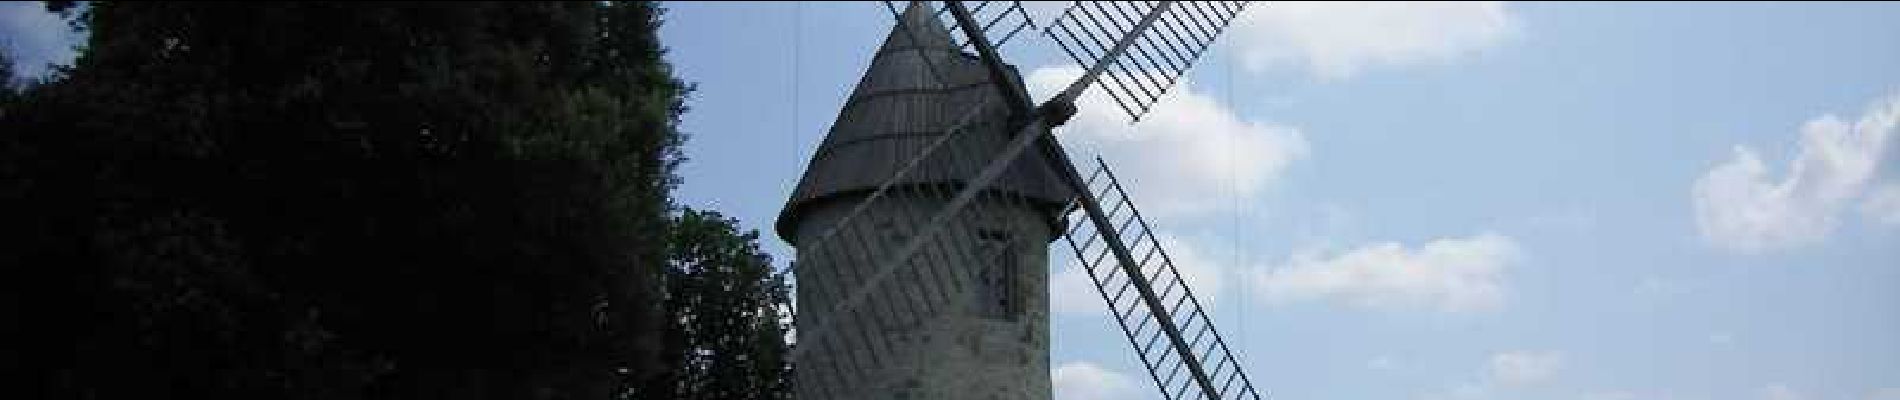 Tour Wandern Montpezat - Montpezat-d'Agenais, le circuit du moulin à vent - Pays de la vallée du Lot - Photo